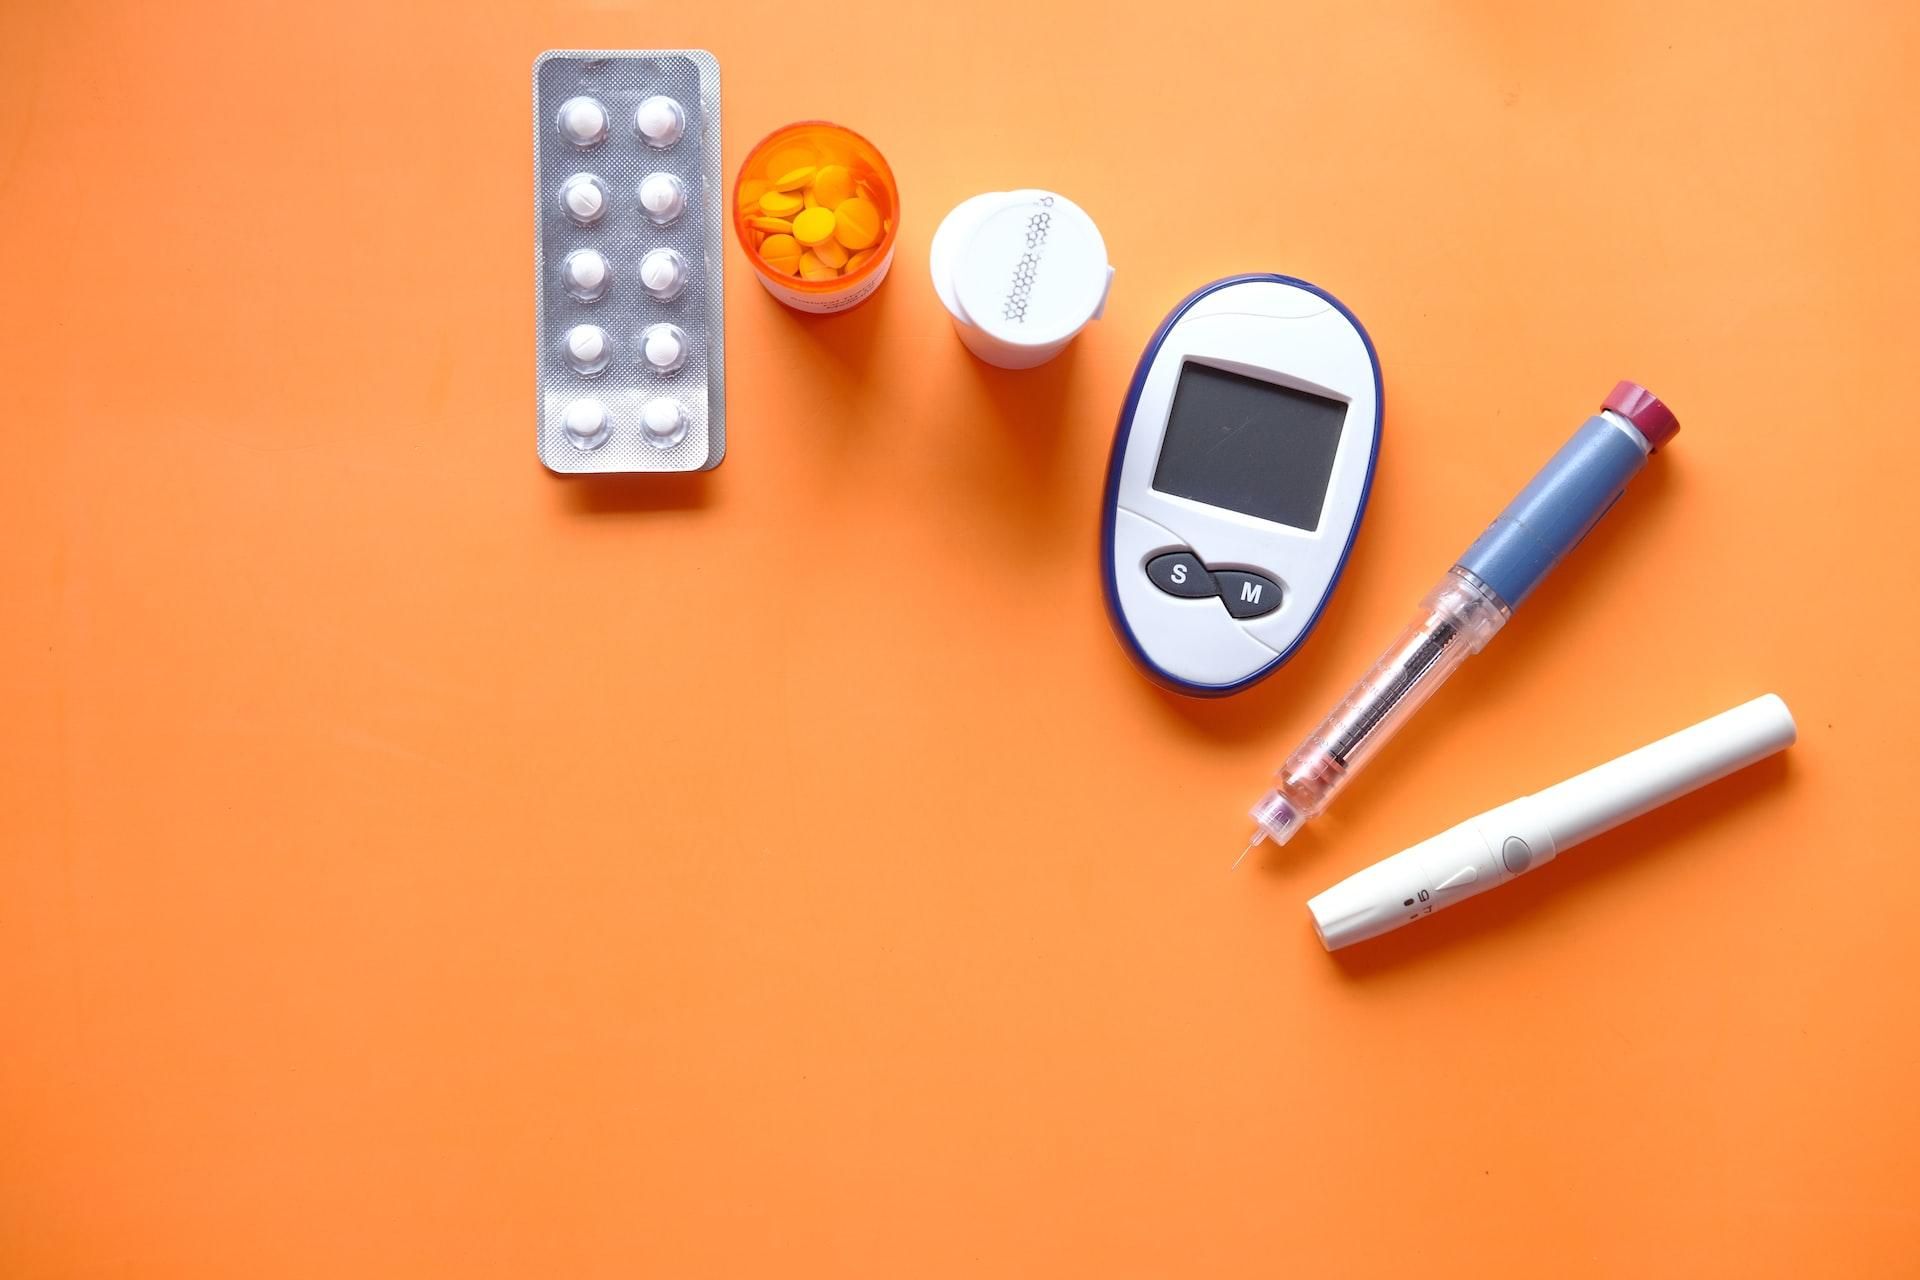 inzulin, diabetikus mérőeszközök és tabletták narancssárga háttéren